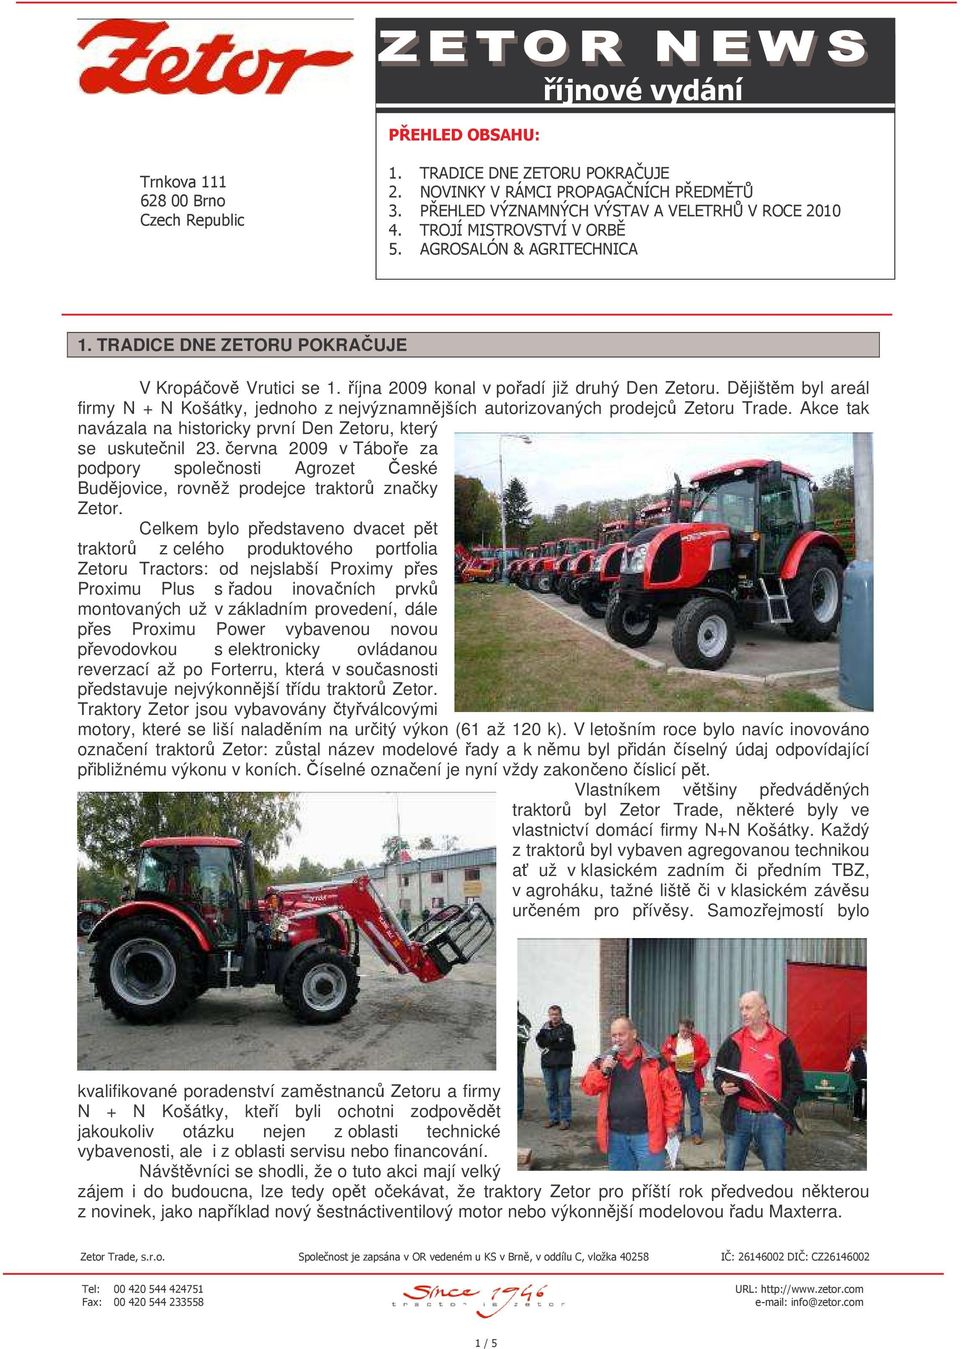 Akce tak navázala na historicky první Den Zetoru, který se uskutenil 23. ervna 2009 v Táboe za podpory spolenosti Agrozet eské Budjovice, rovnž prodejce traktor znaky Zetor.